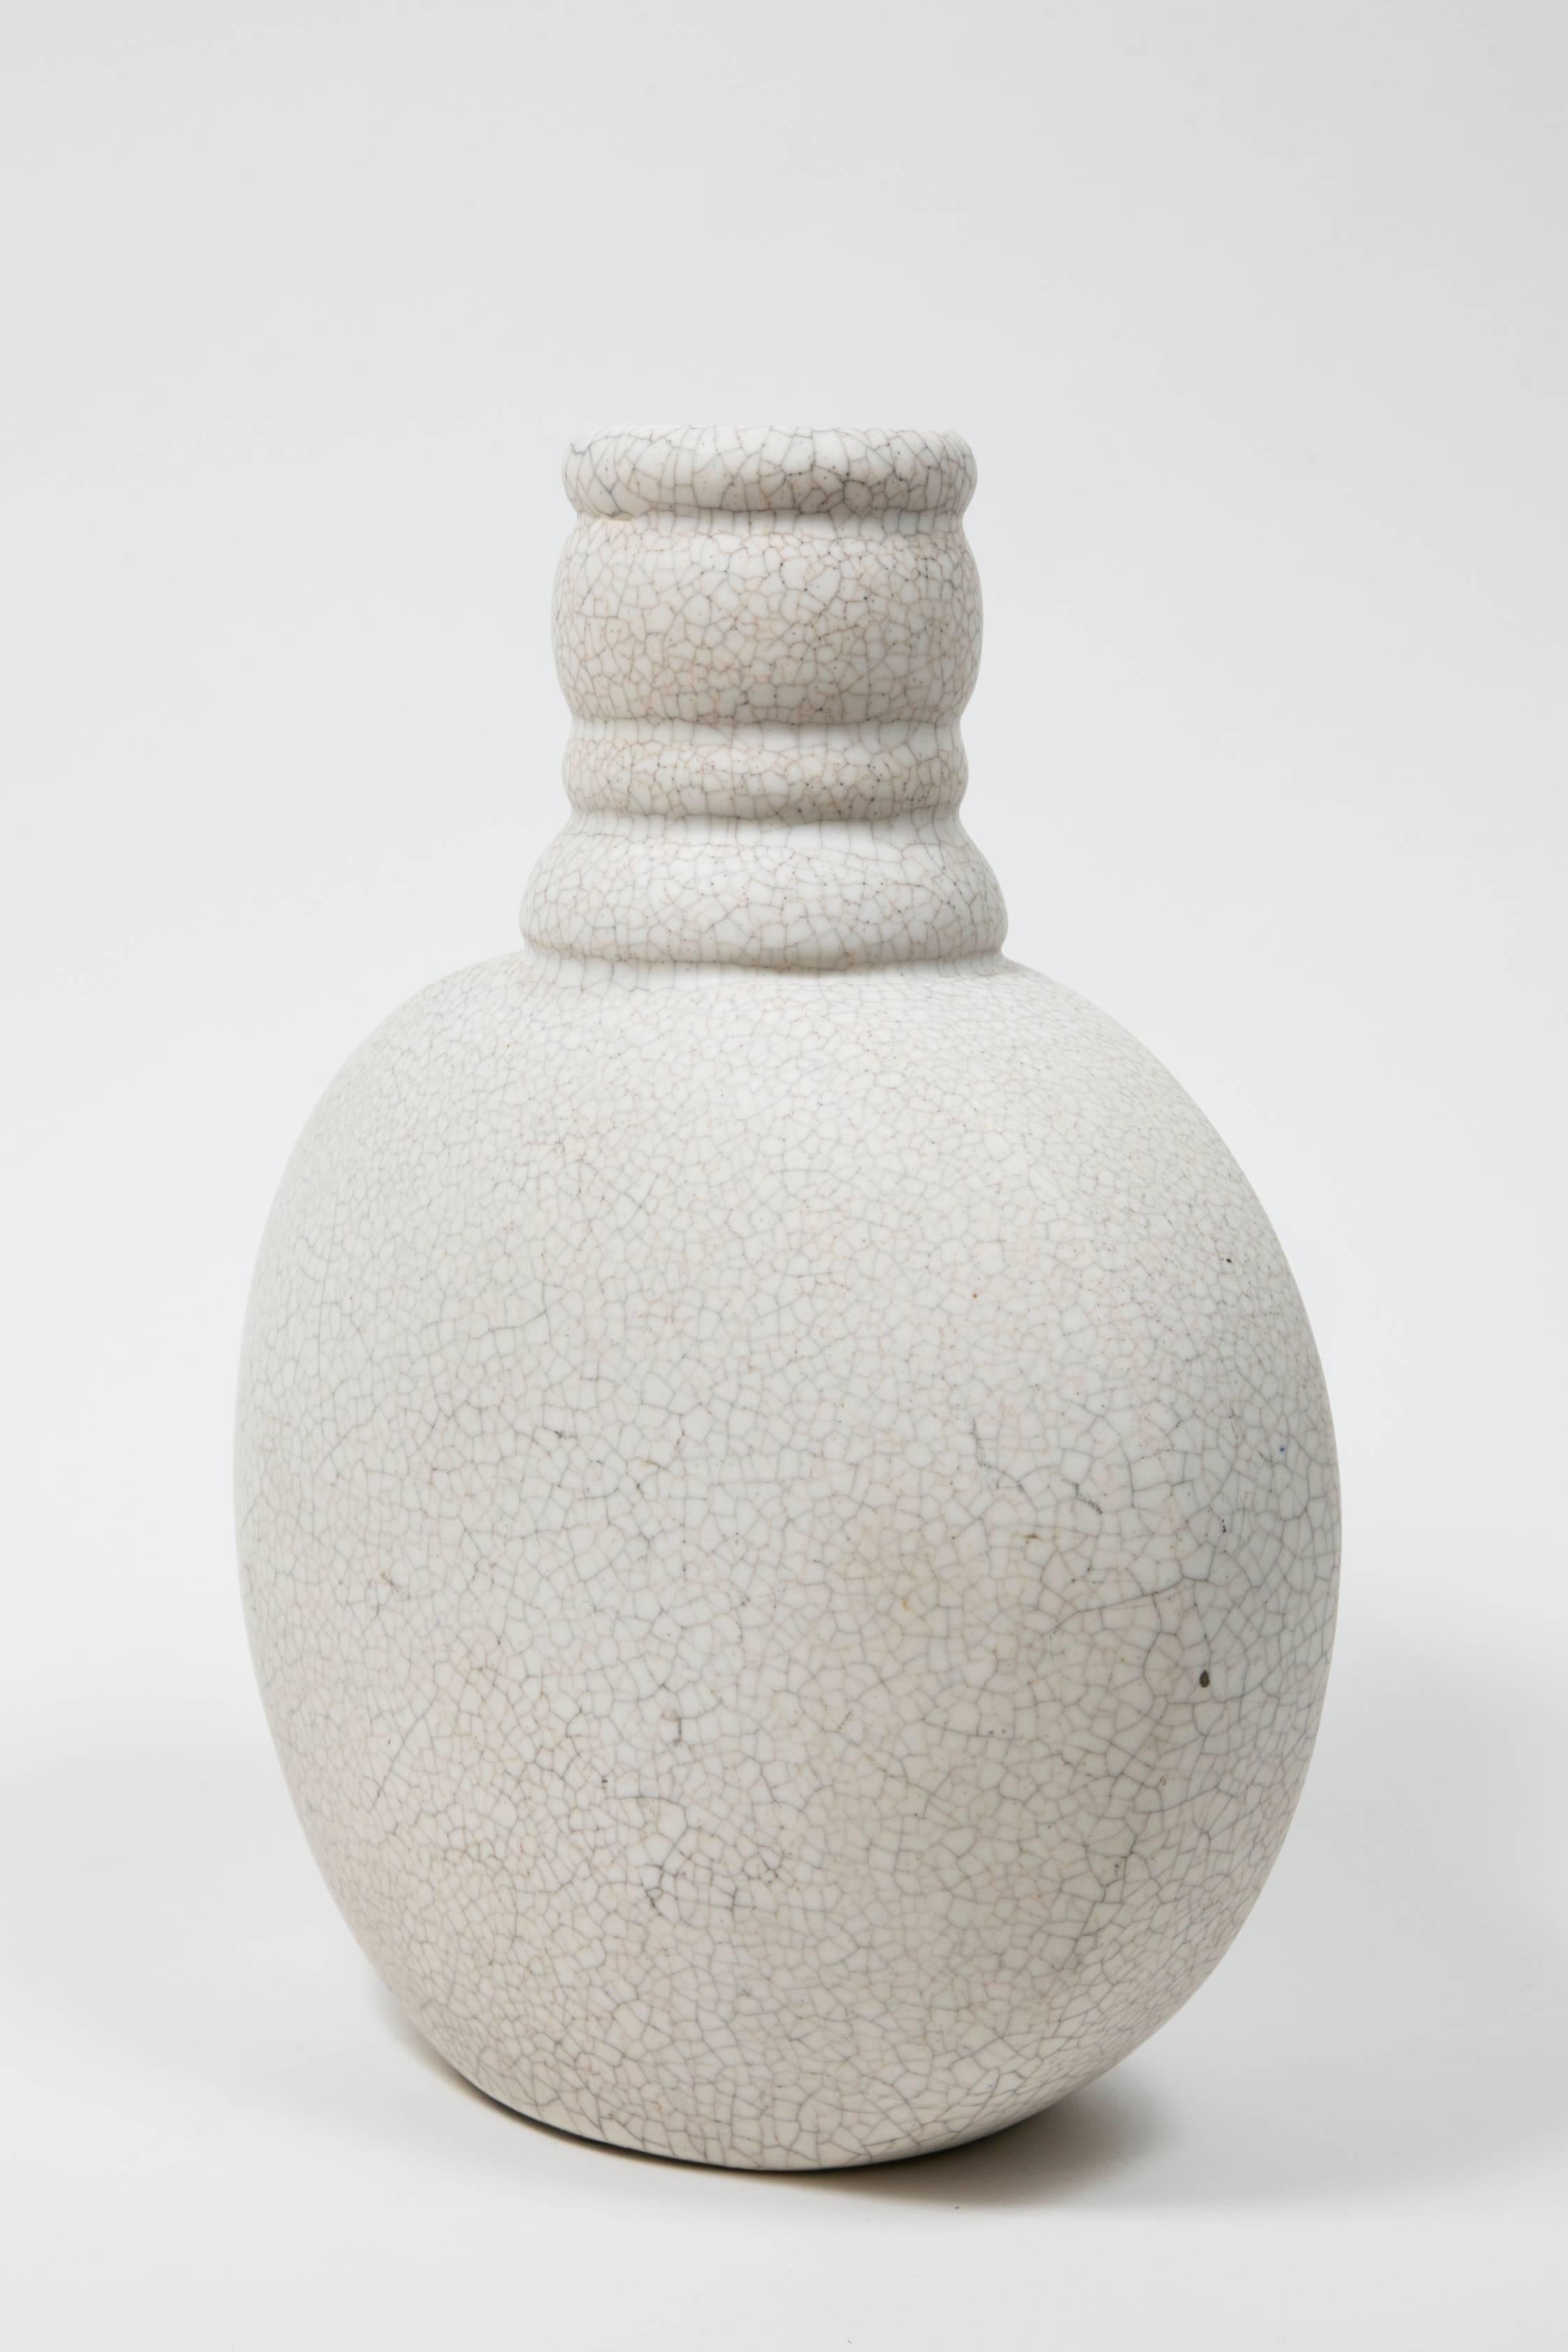 Vase en craquelure blanche française par Charlotte Chauchet (1878-1964)
pour  Atelier Primavera au Printemps 
Signé Primavera, France,
numéroté.